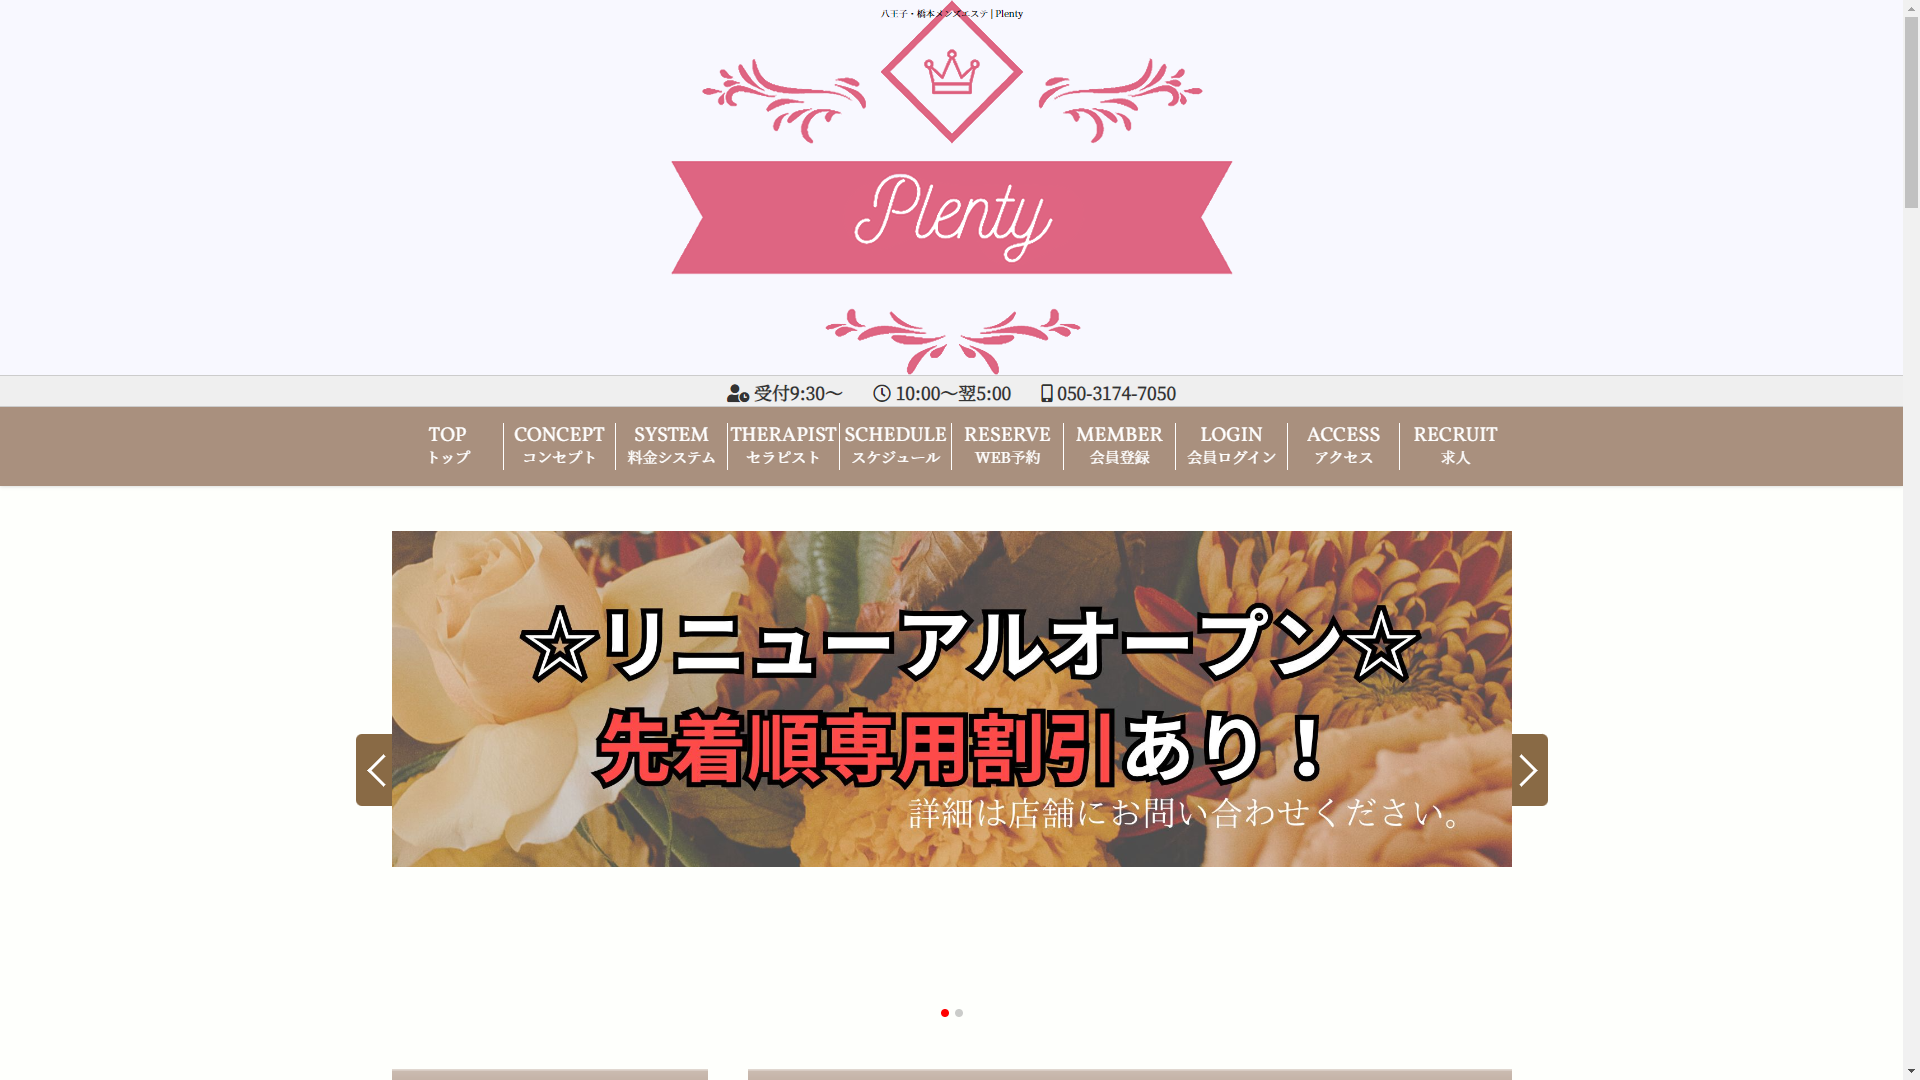 Plenty 橋本ルーム オフィシャルサイト